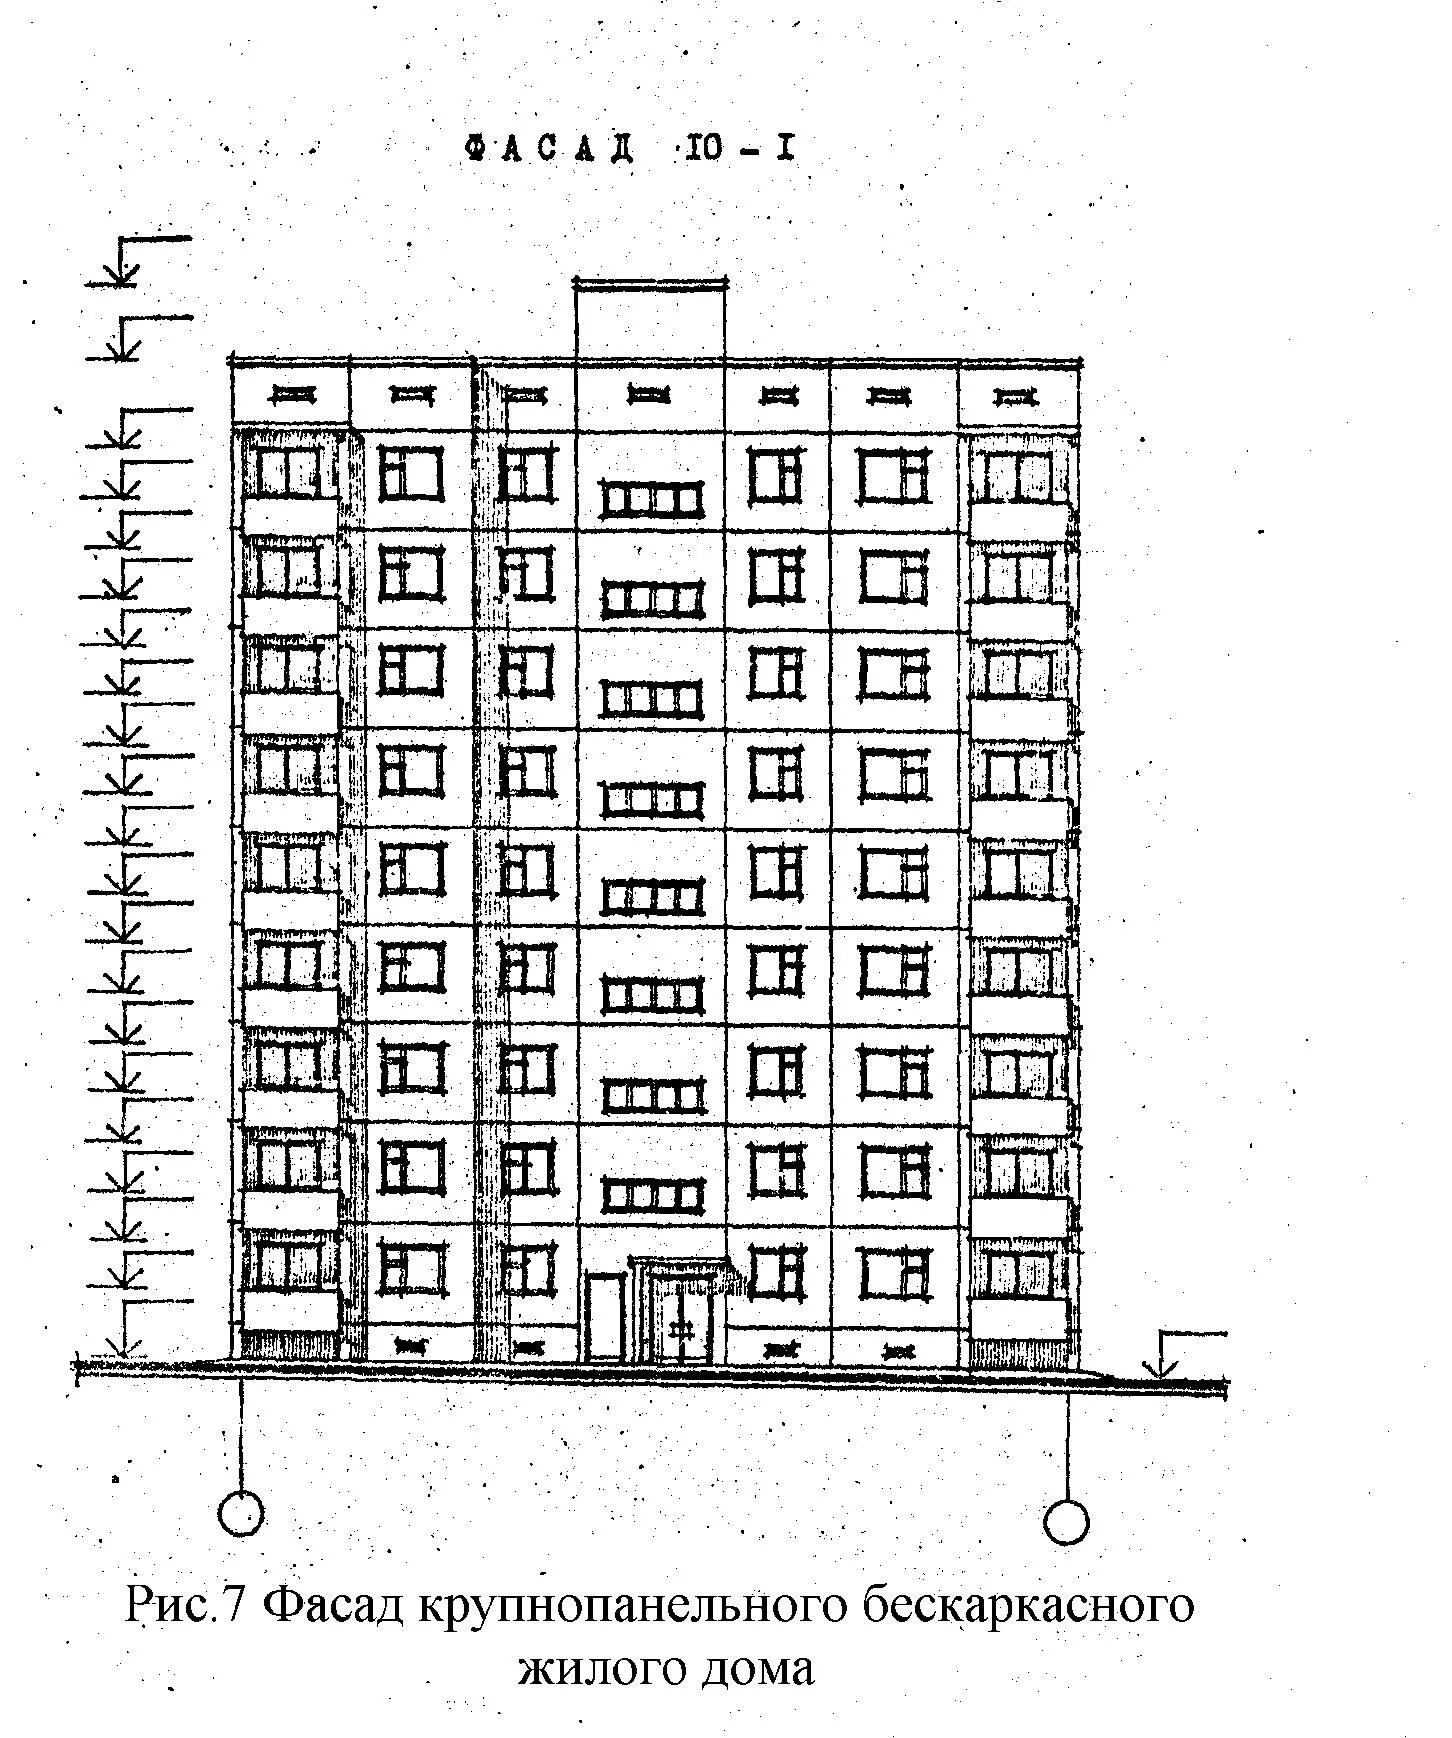 Схема 9 этажного панельного дома. Чертеж 9 этажного жилого дома. Чертеж 9 этажного жилого дома панельный. Фасад многоэтажного жилого дома чертеж.